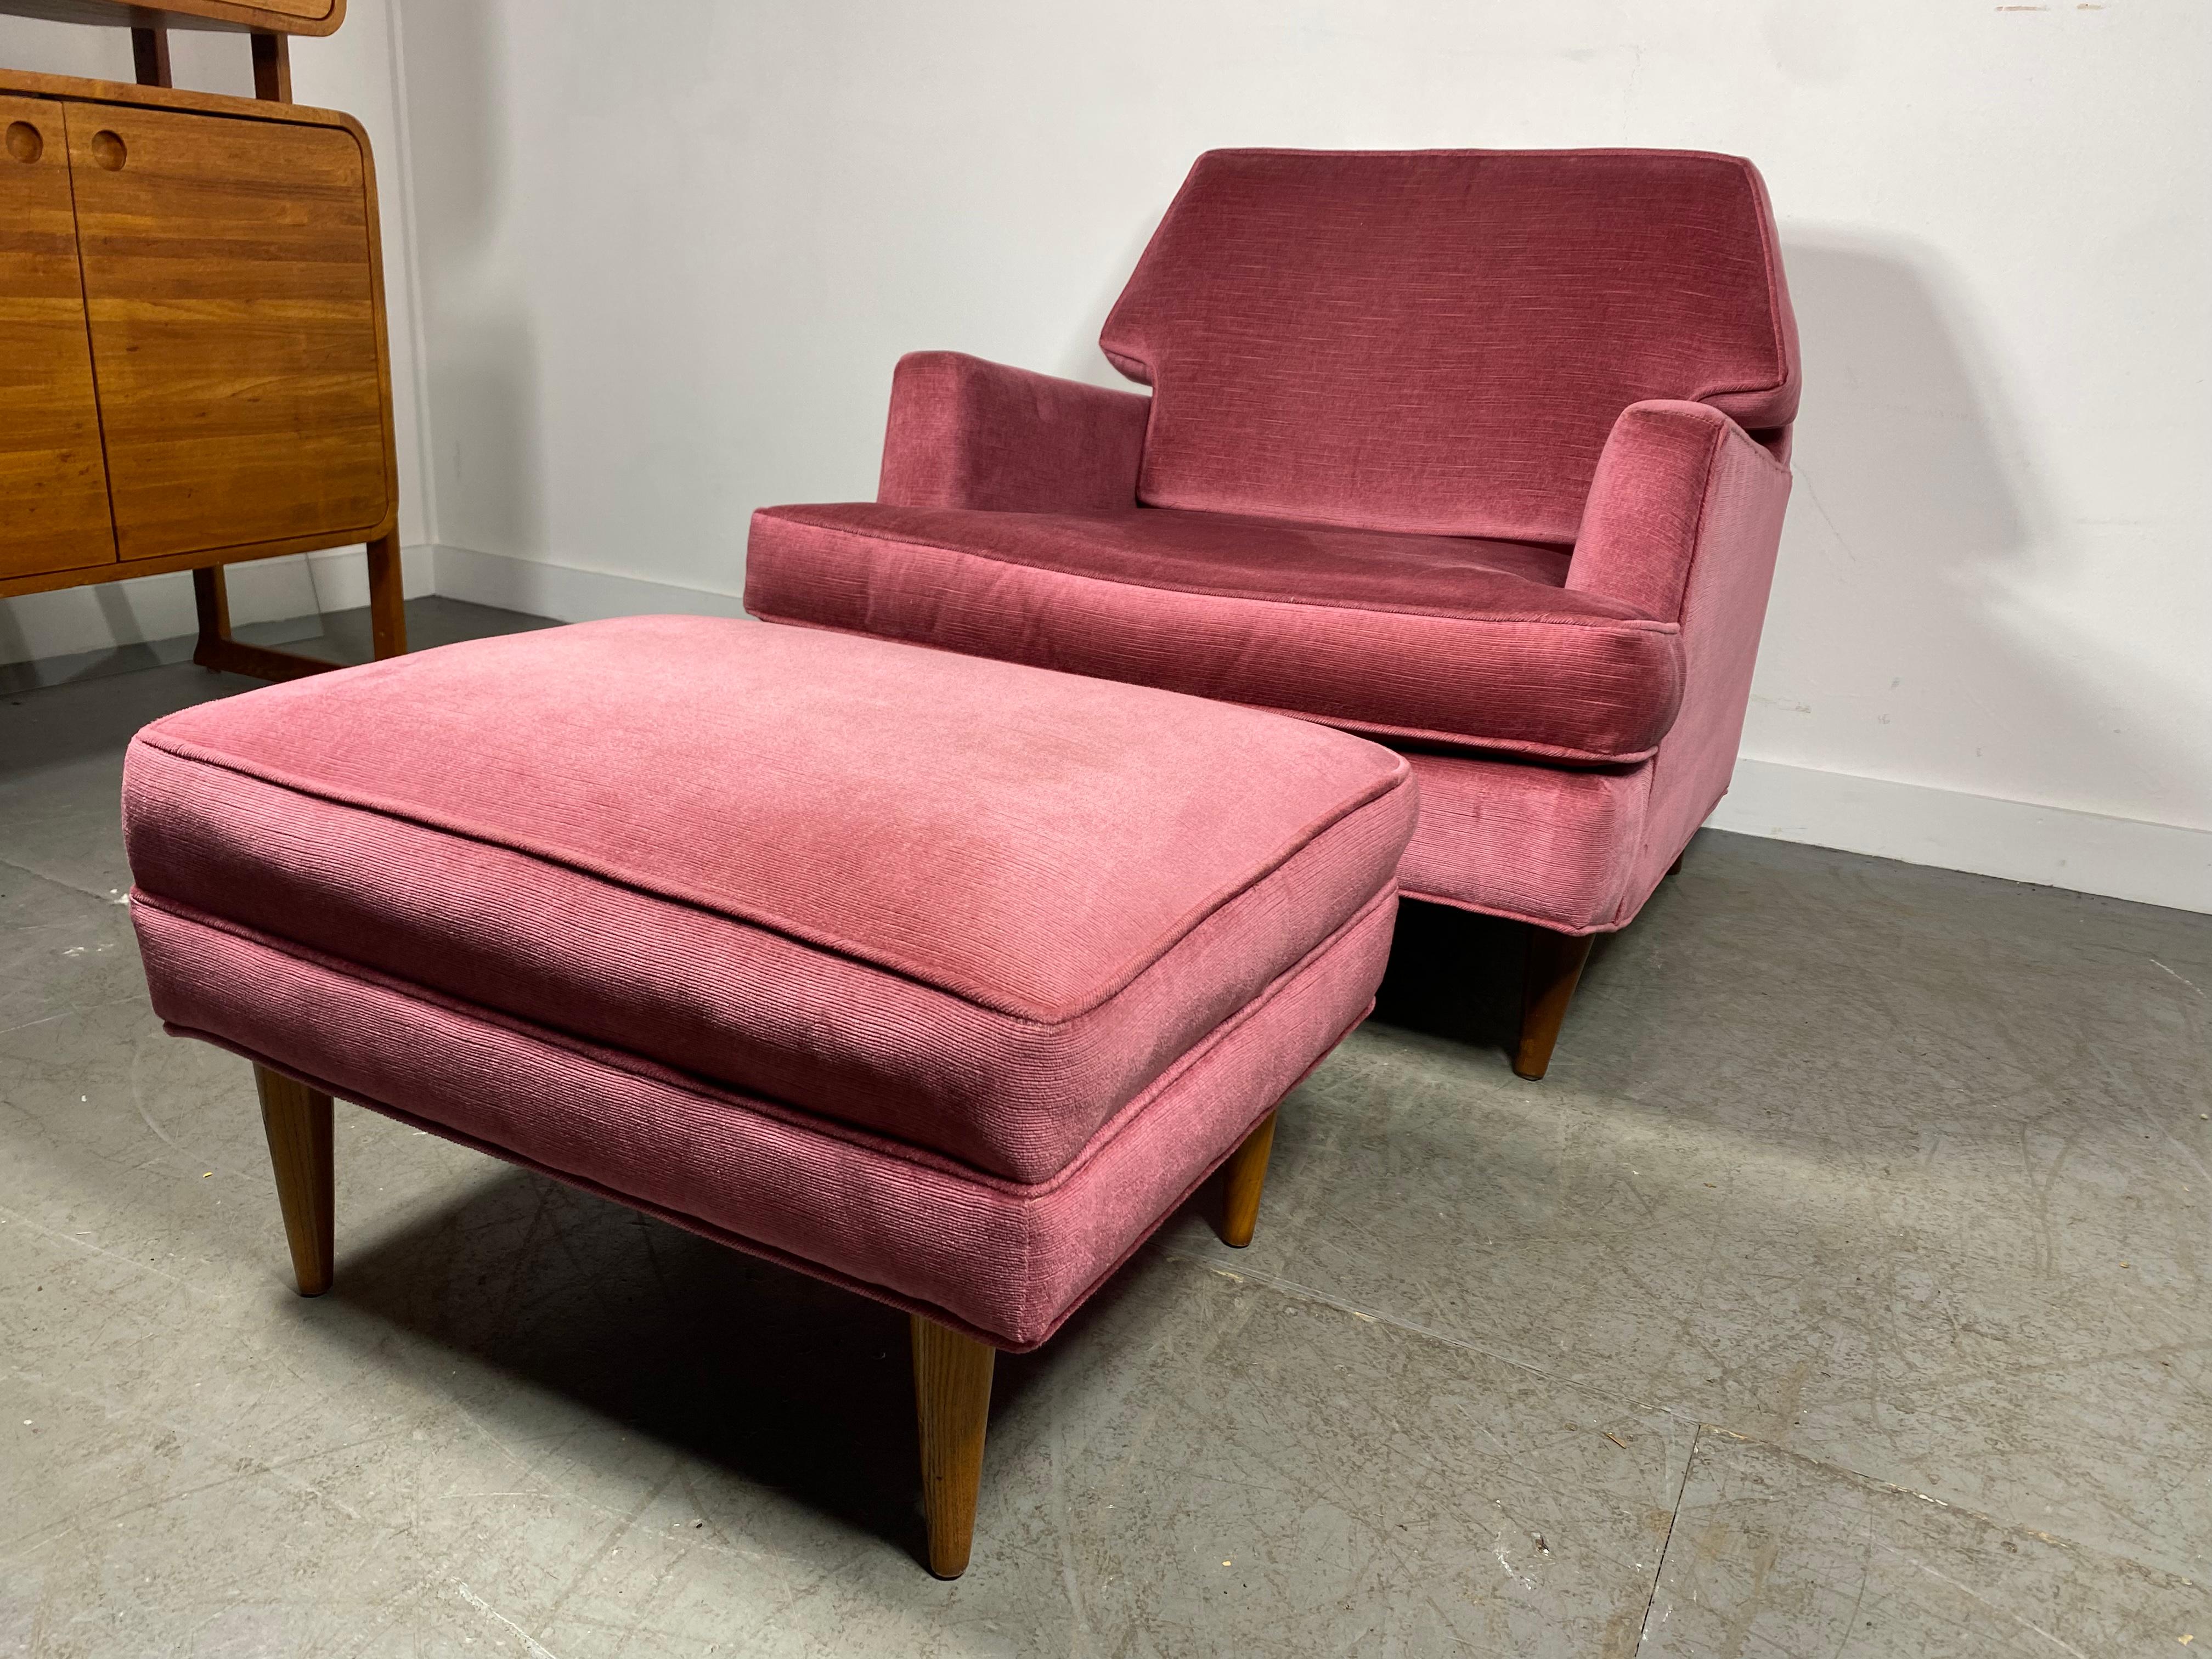 Superbe chaise longue et ottomane moderniste conçue par Roger Springer pour Dunbar,, Style et design classiques,, Aussi frais aujourd'hui que lorsqu'il a été conçu il y a 70 ans,, Nouvellement rembourré, Extrêmement confortable, Qualité et